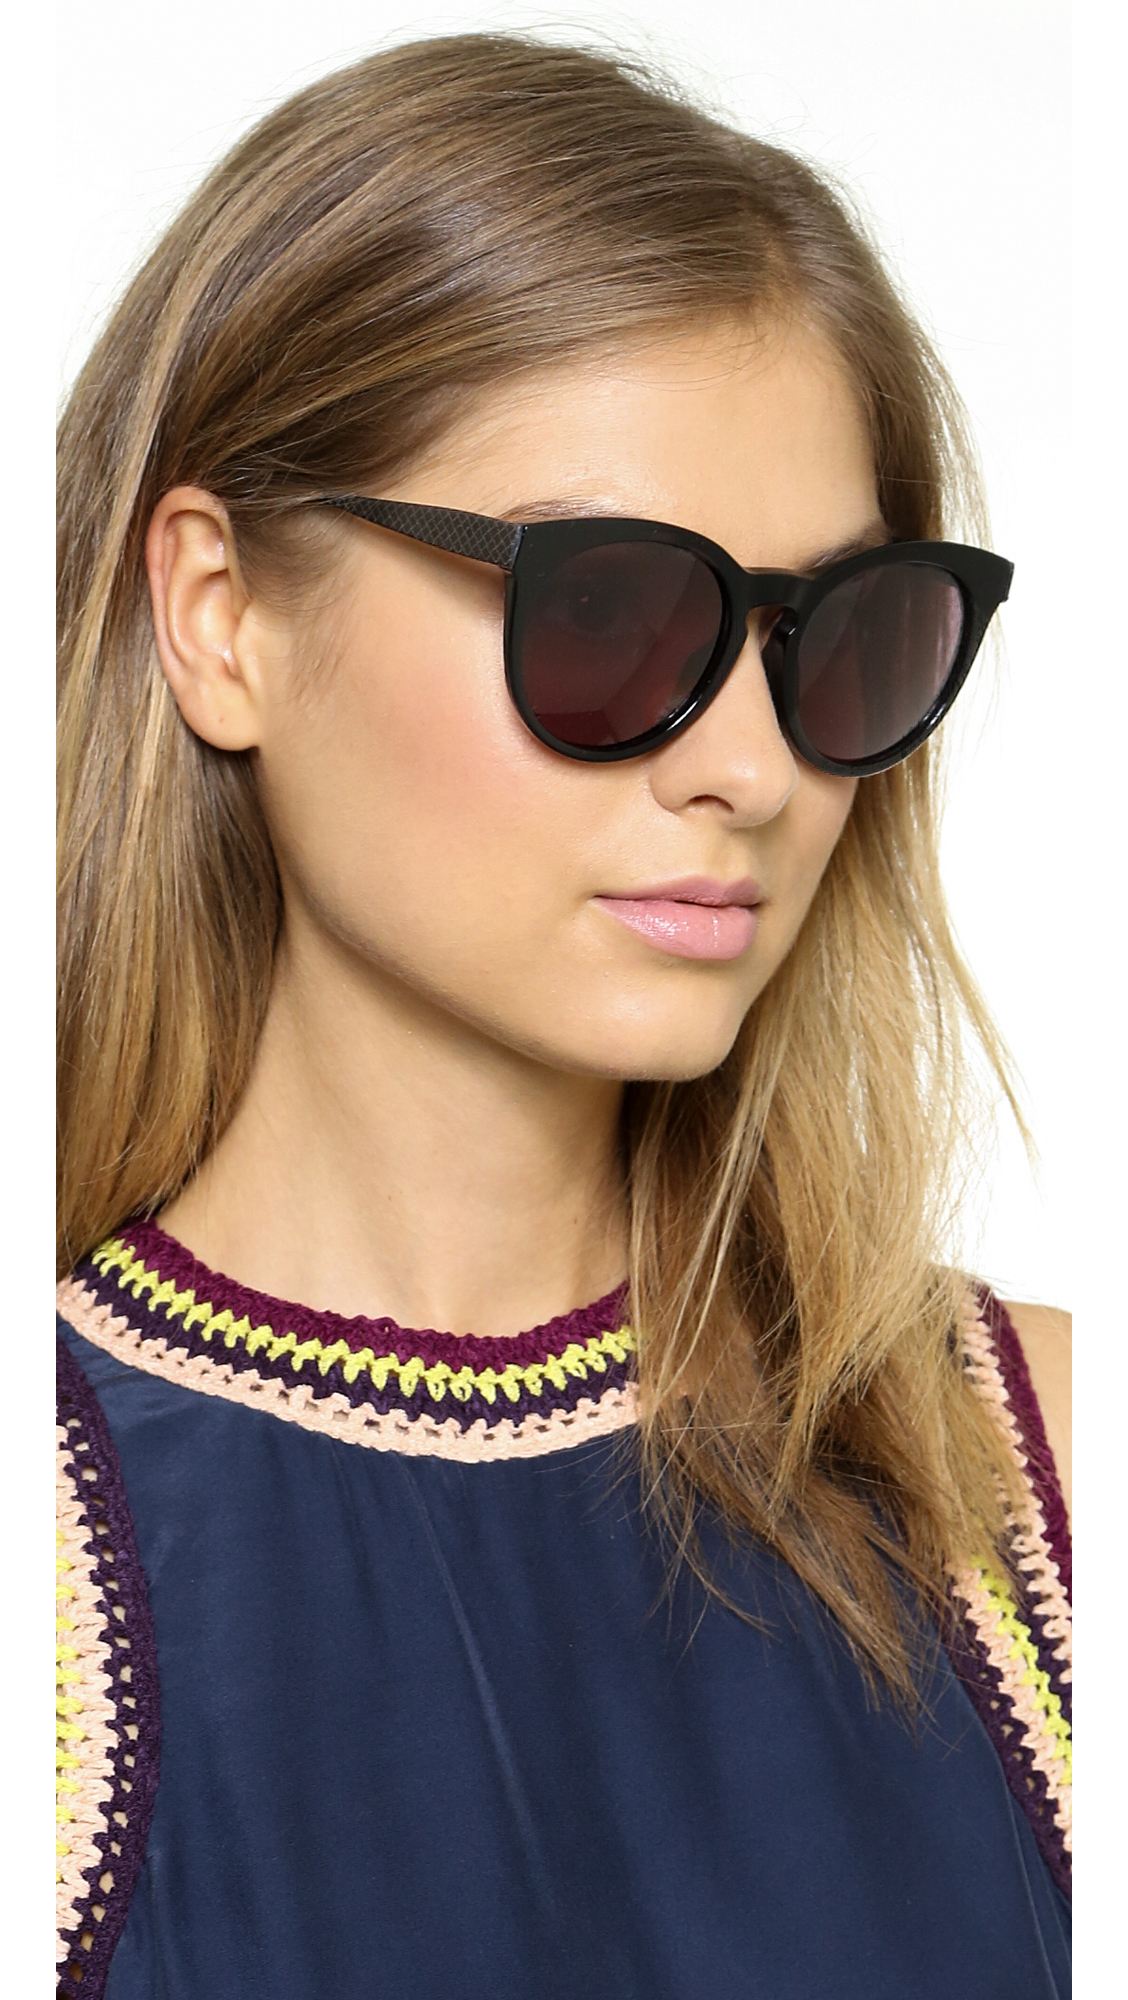 Lyst - Bottega Veneta Special Fit Round Lens Sunglasses - Black/Grey in ...